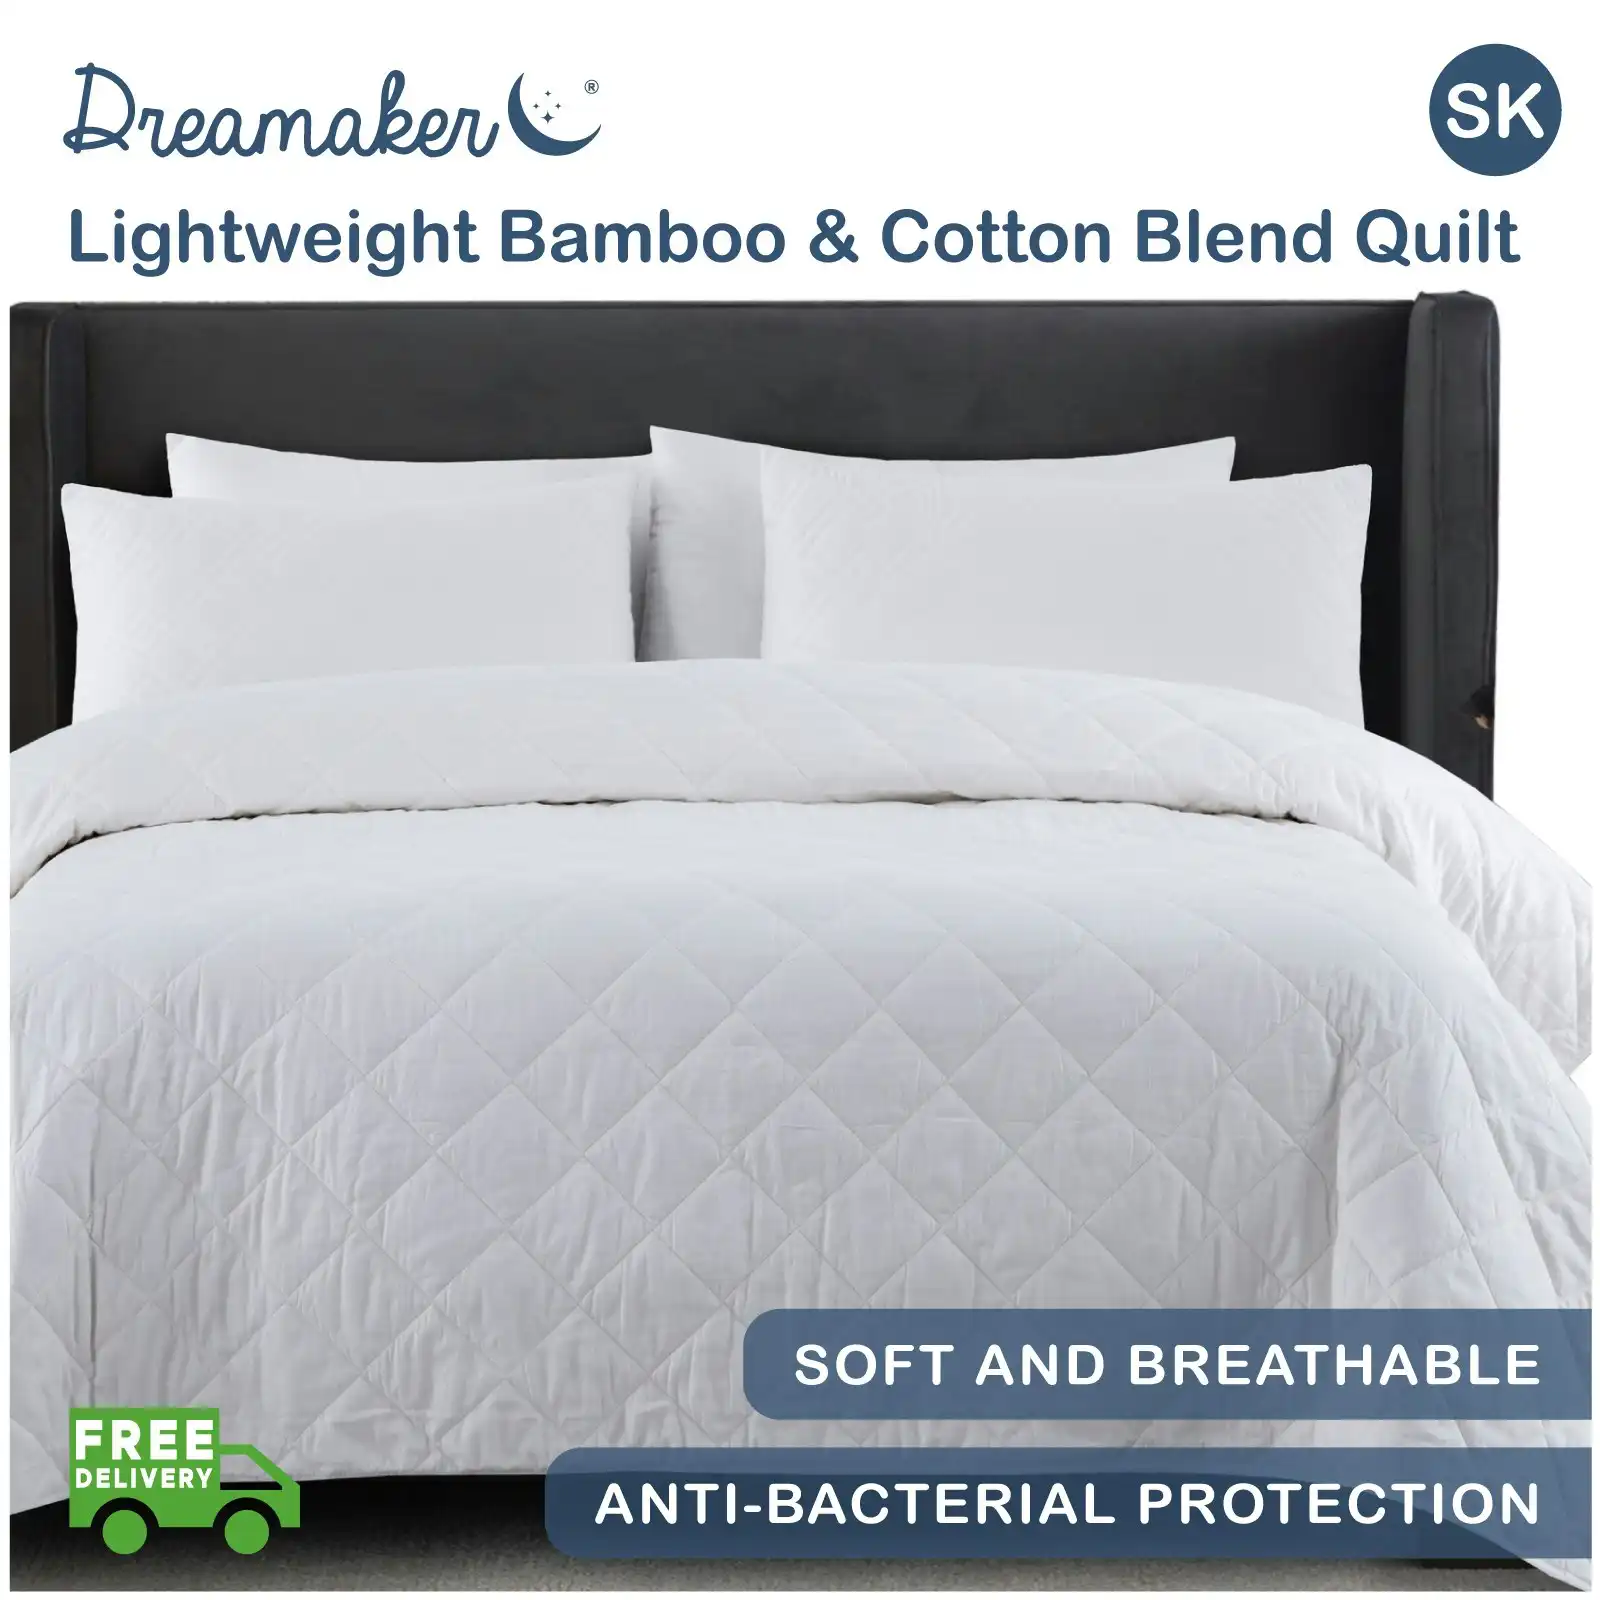 Dreamaker Lightweight Bamboo & Cotton Blend Quilt Super King Bed